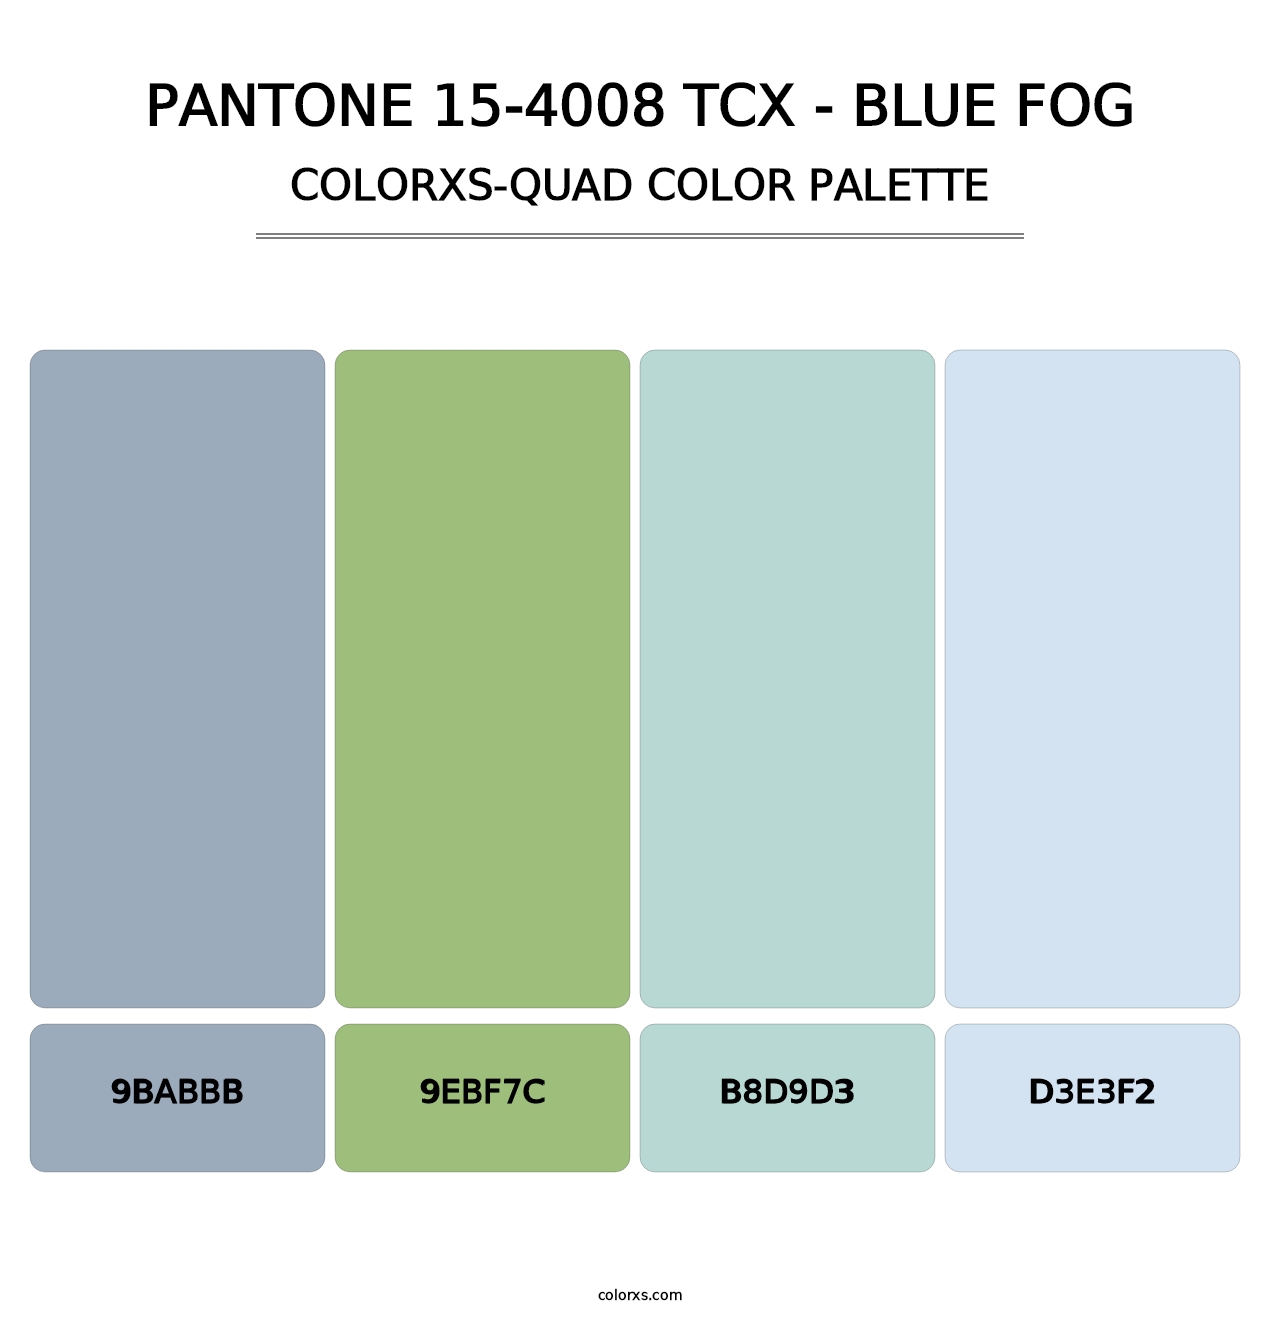 PANTONE 15-4008 TCX - Blue Fog - Colorxs Quad Palette